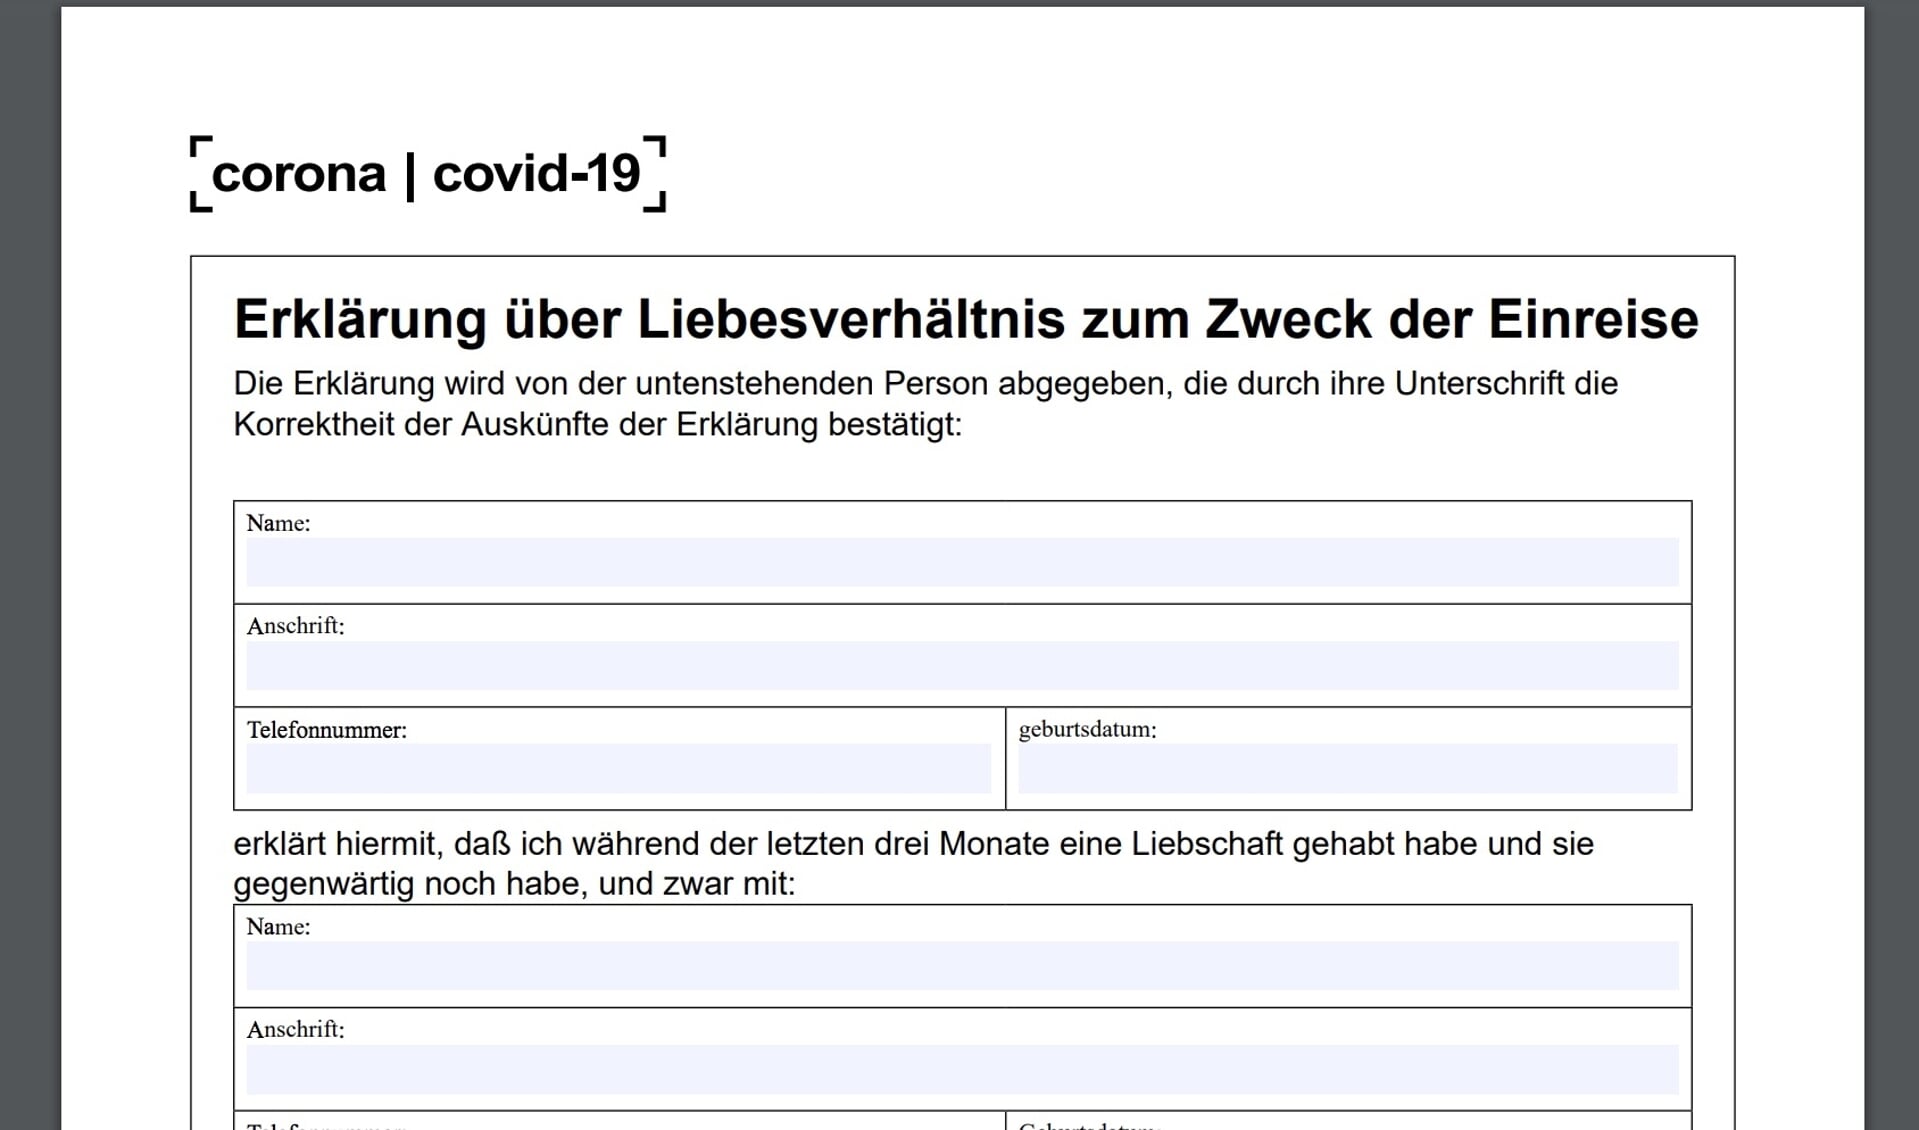 Formularen for kærester findes nu også på tysk. Screenshot